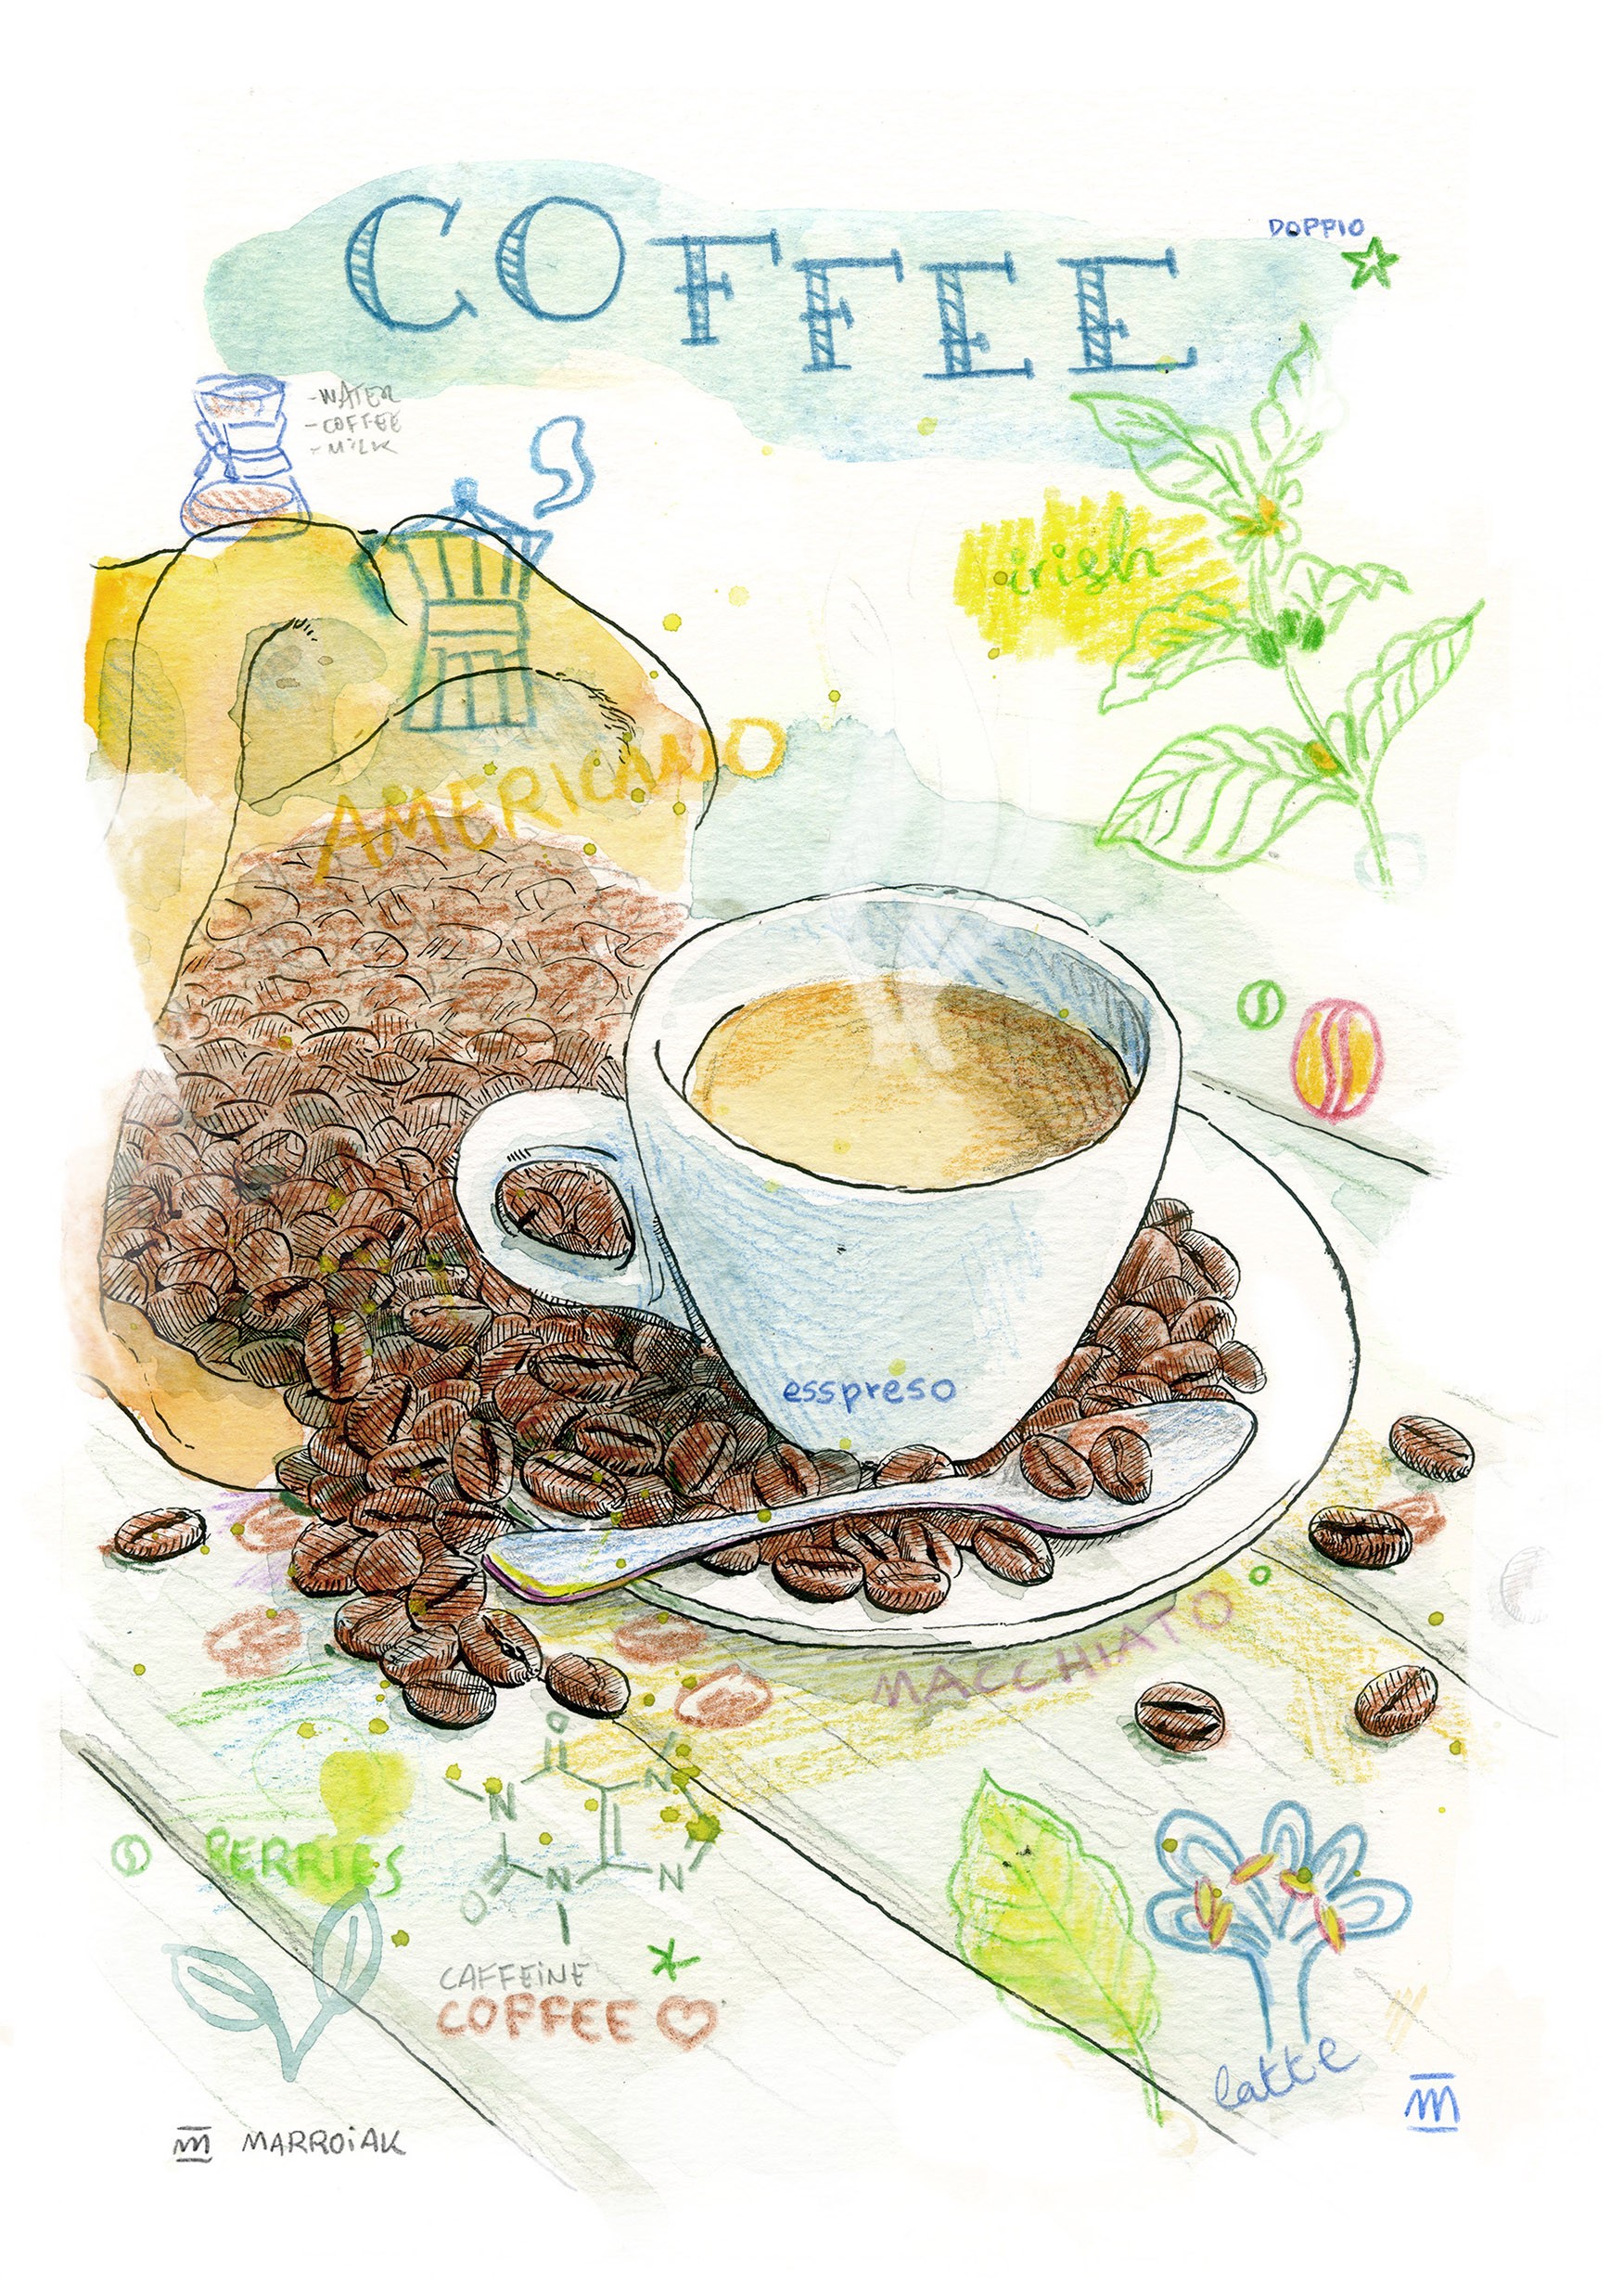 Dibujo con una taza de café expreso para la decoración de pared de cocinas, bares y restaurantes. Arte cafeterías.